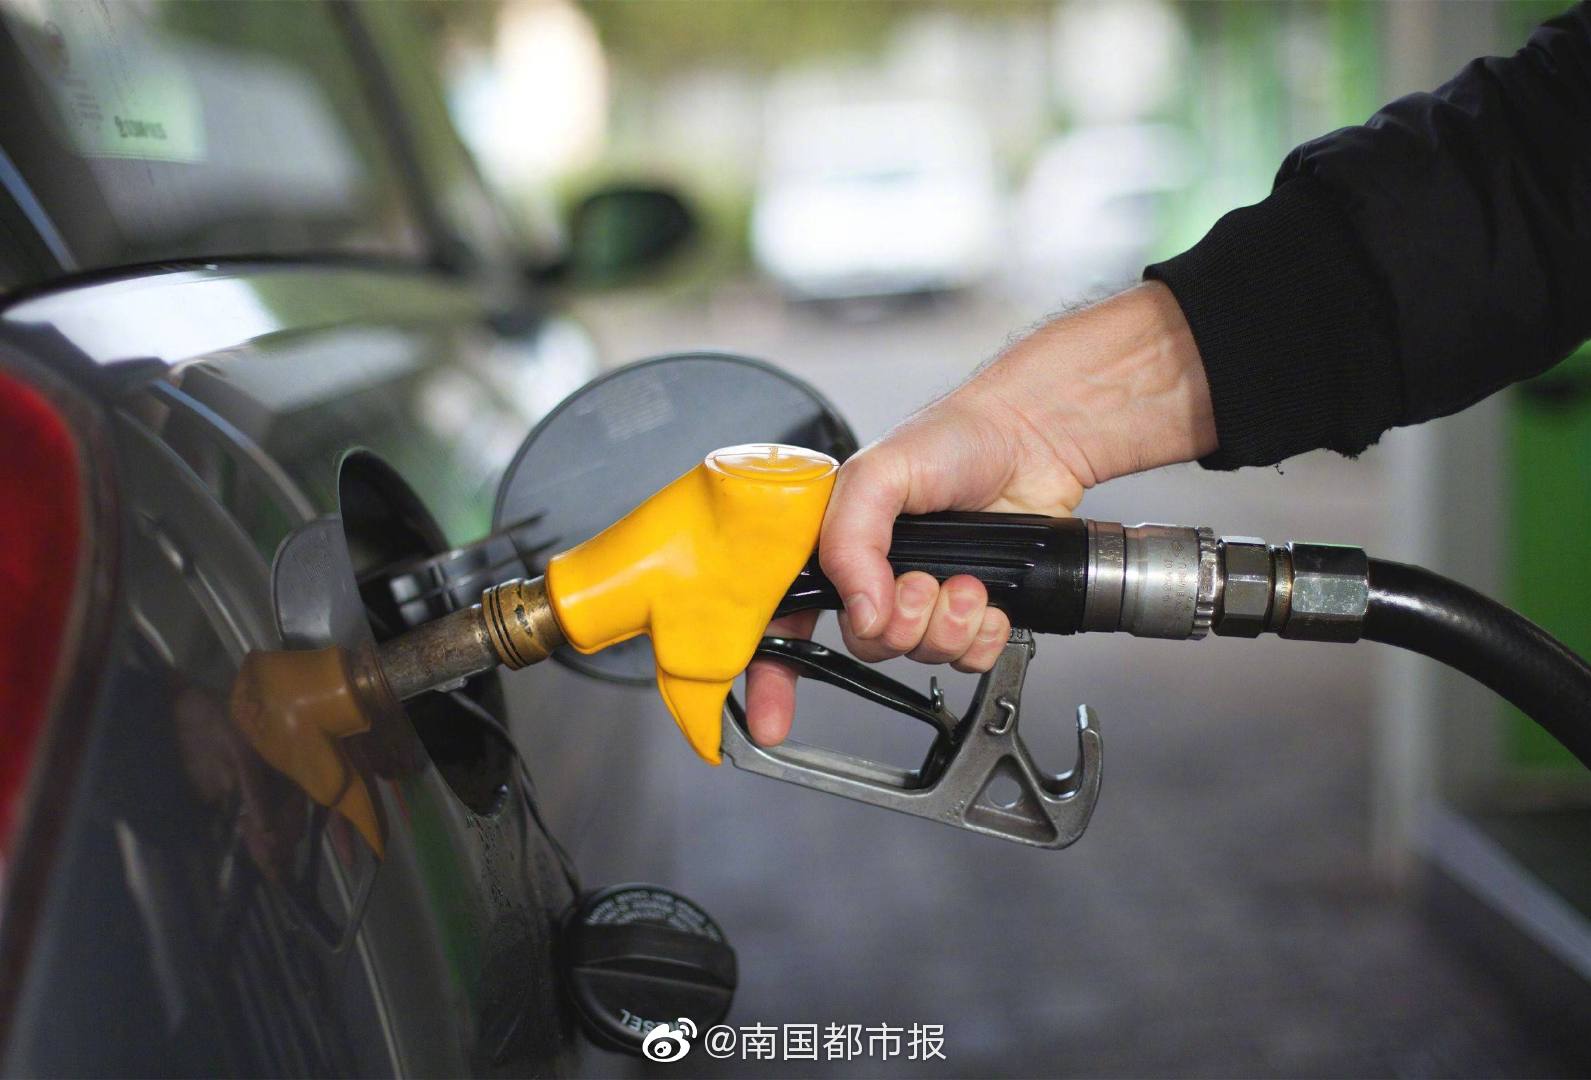 2022年第一次油价上涨 加满一箱油要多花14元左右